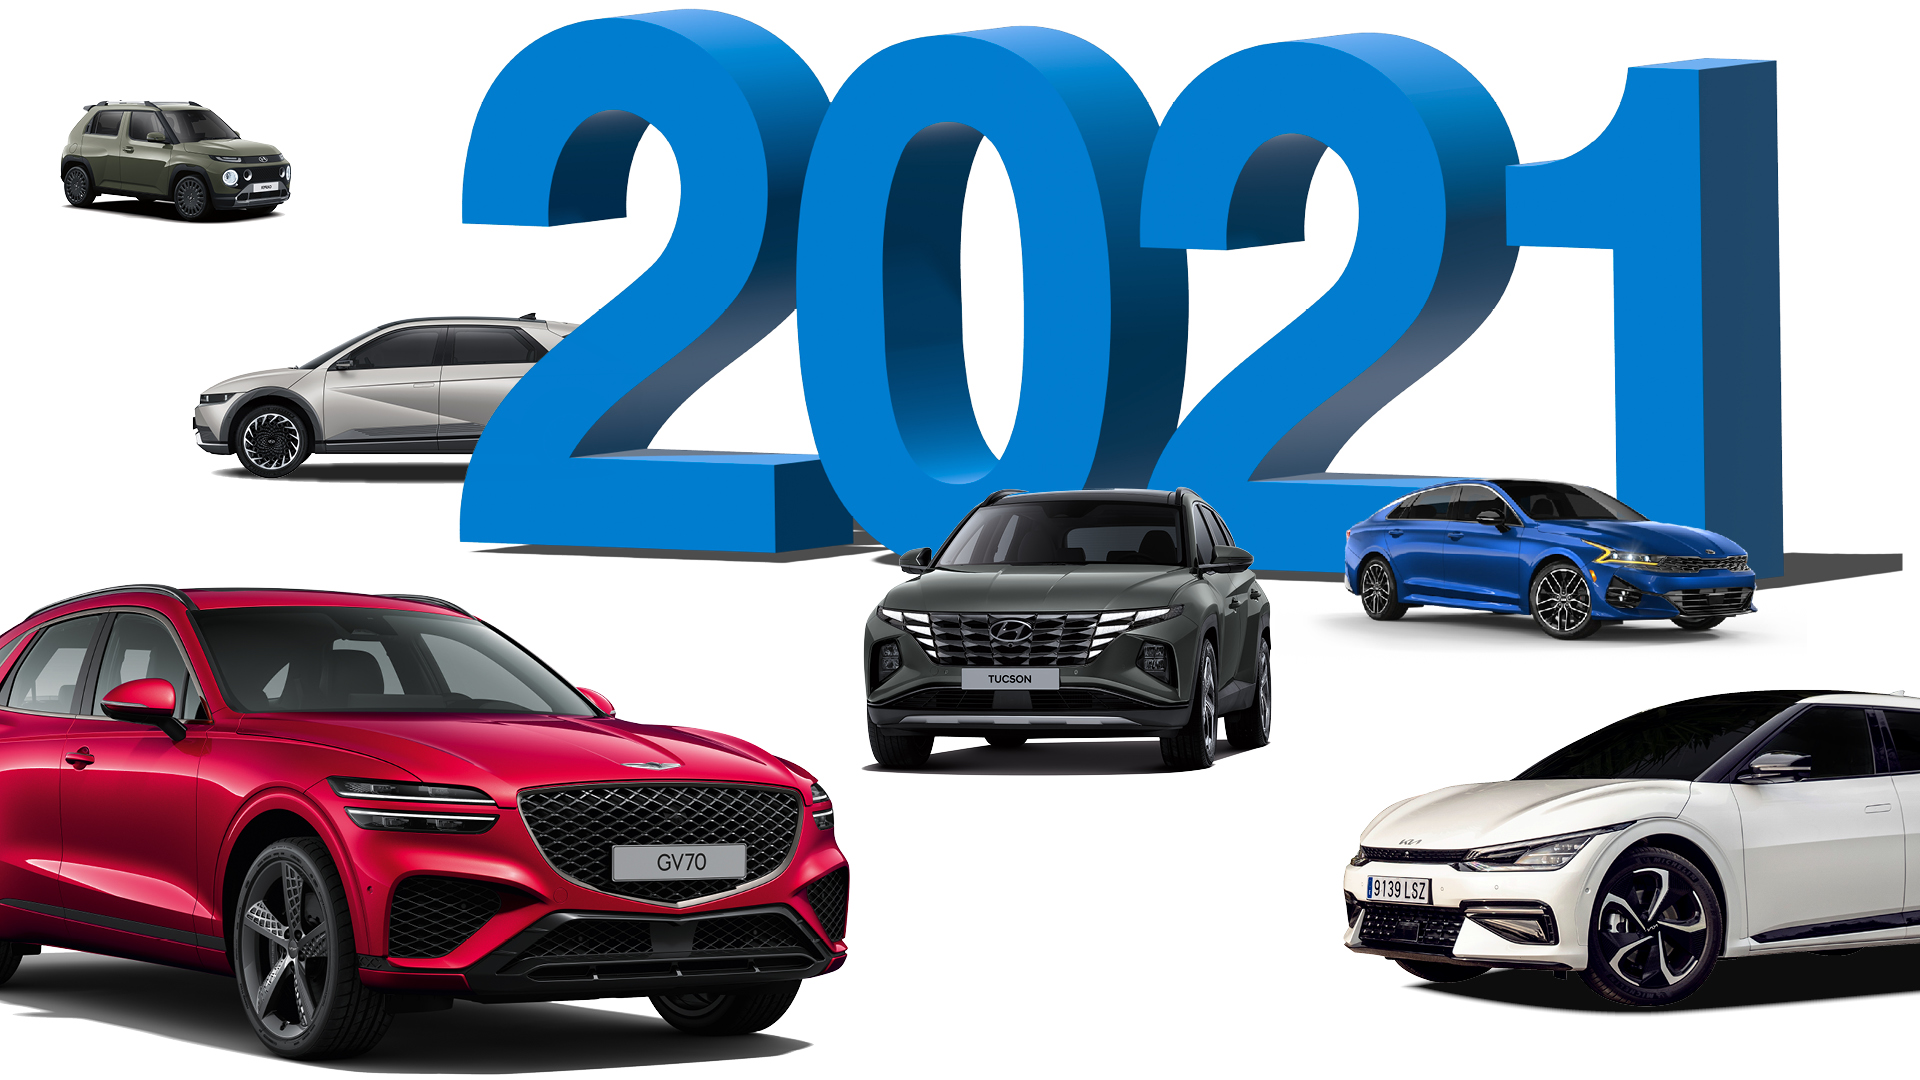 2021 숫자와 현대차그룹 자동차 모델 캐스퍼, 아이오닉 5, 투싼, K5, EV6, GV70